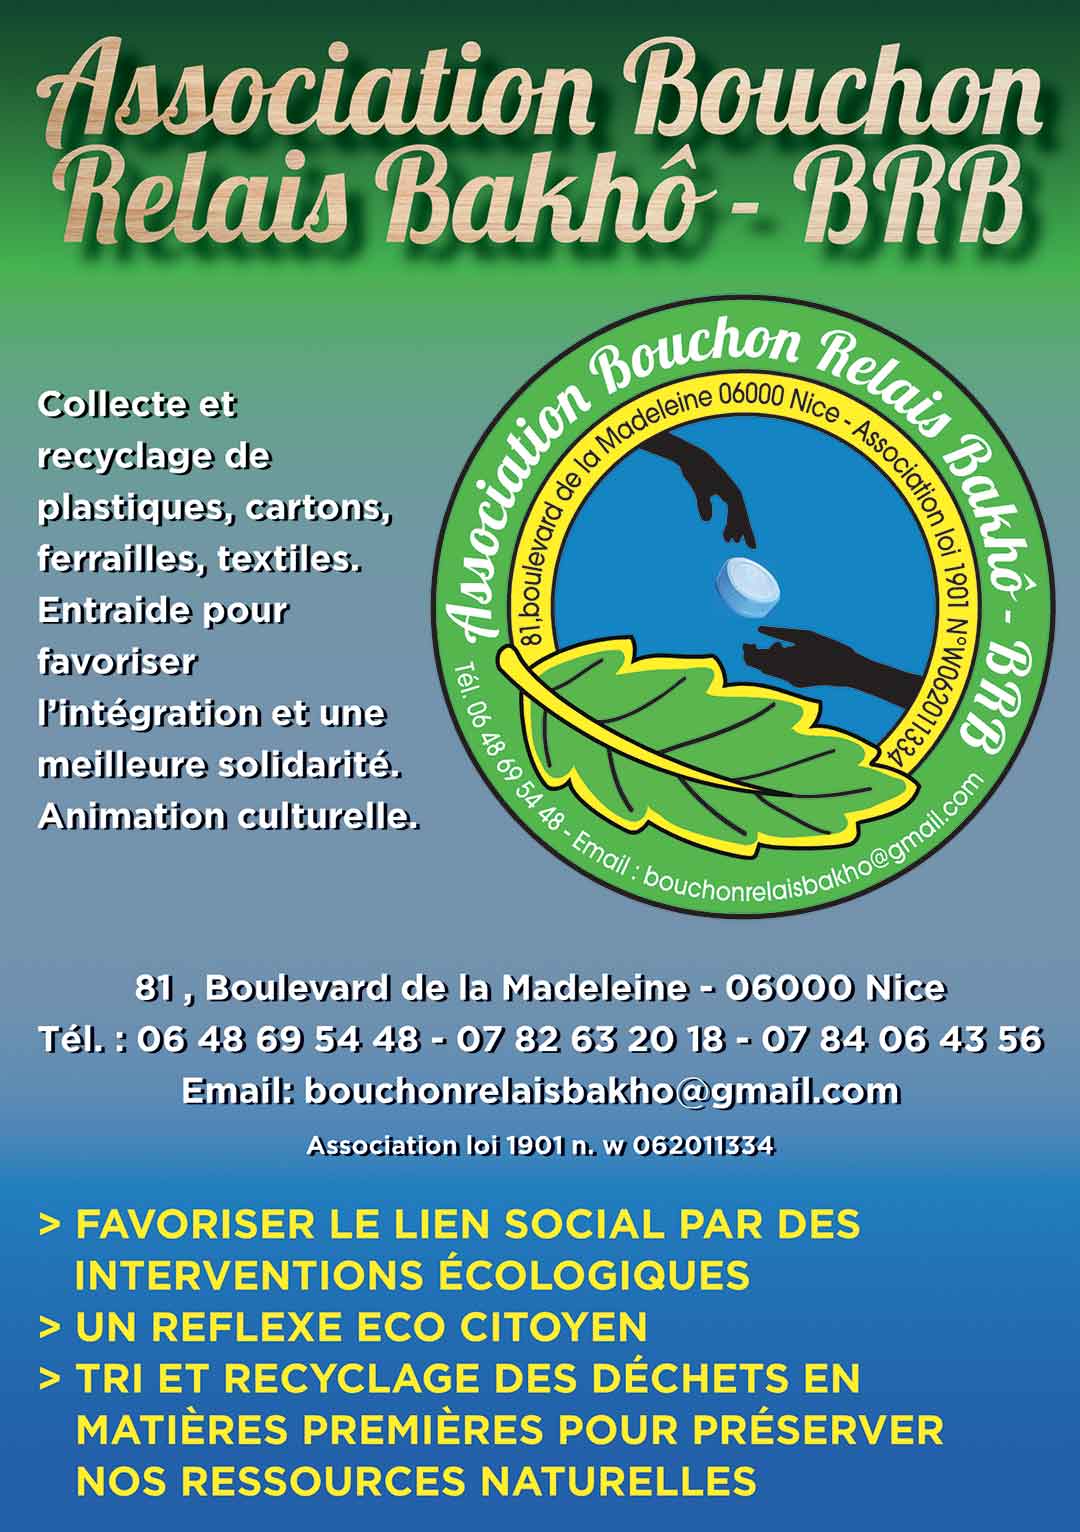 Association Bouchon Relais Bakho